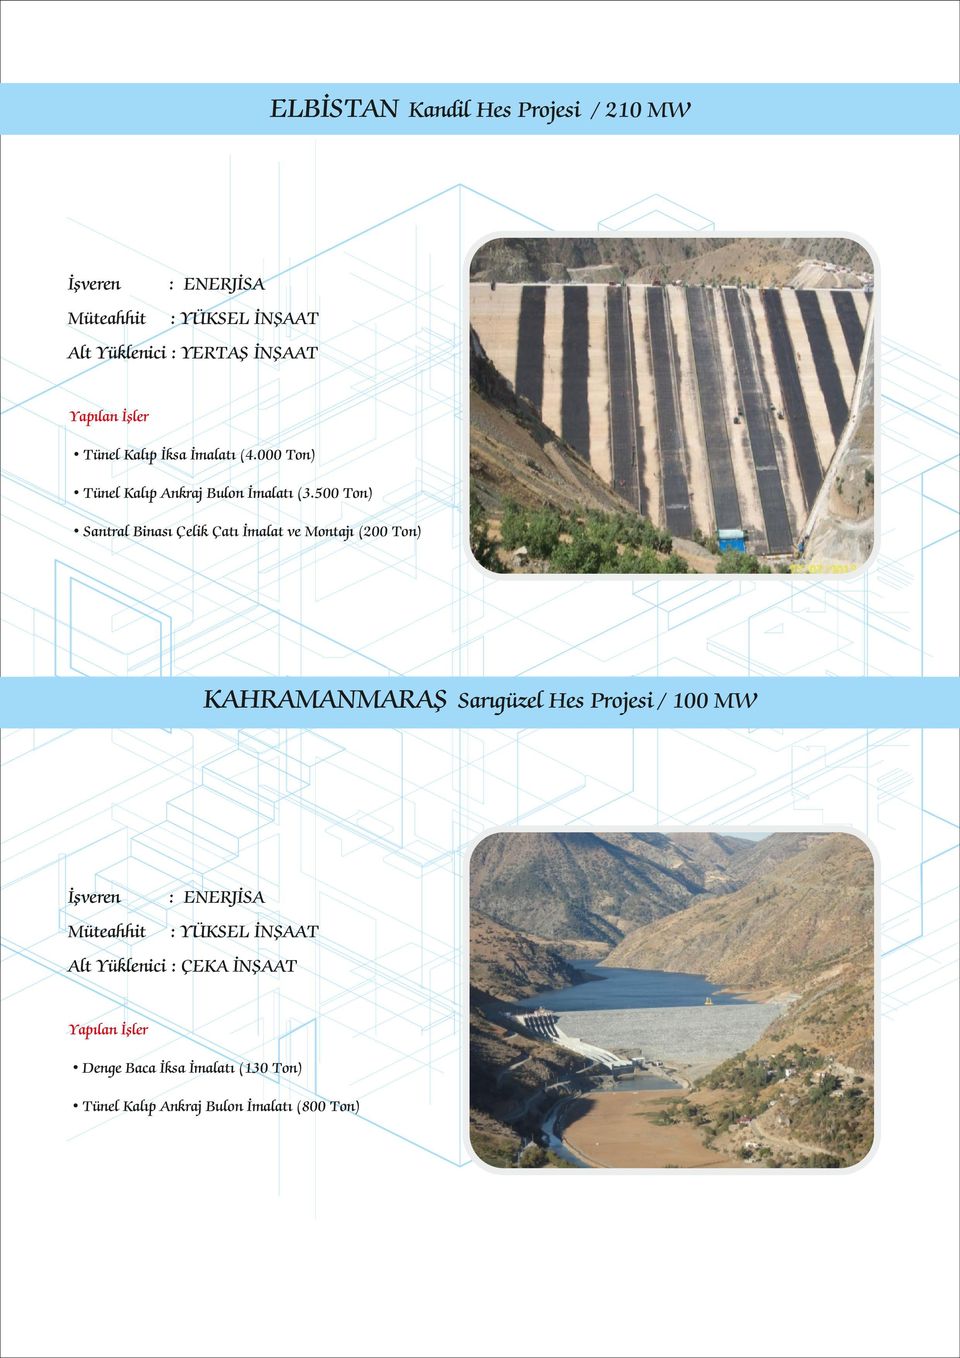 500 Ton) Santral Binası Çelik Çatı İmalat ve Montajı (200 Ton) KAHRAMANMARAŞ Sarıgüzel Hes Projesi / 100 MW